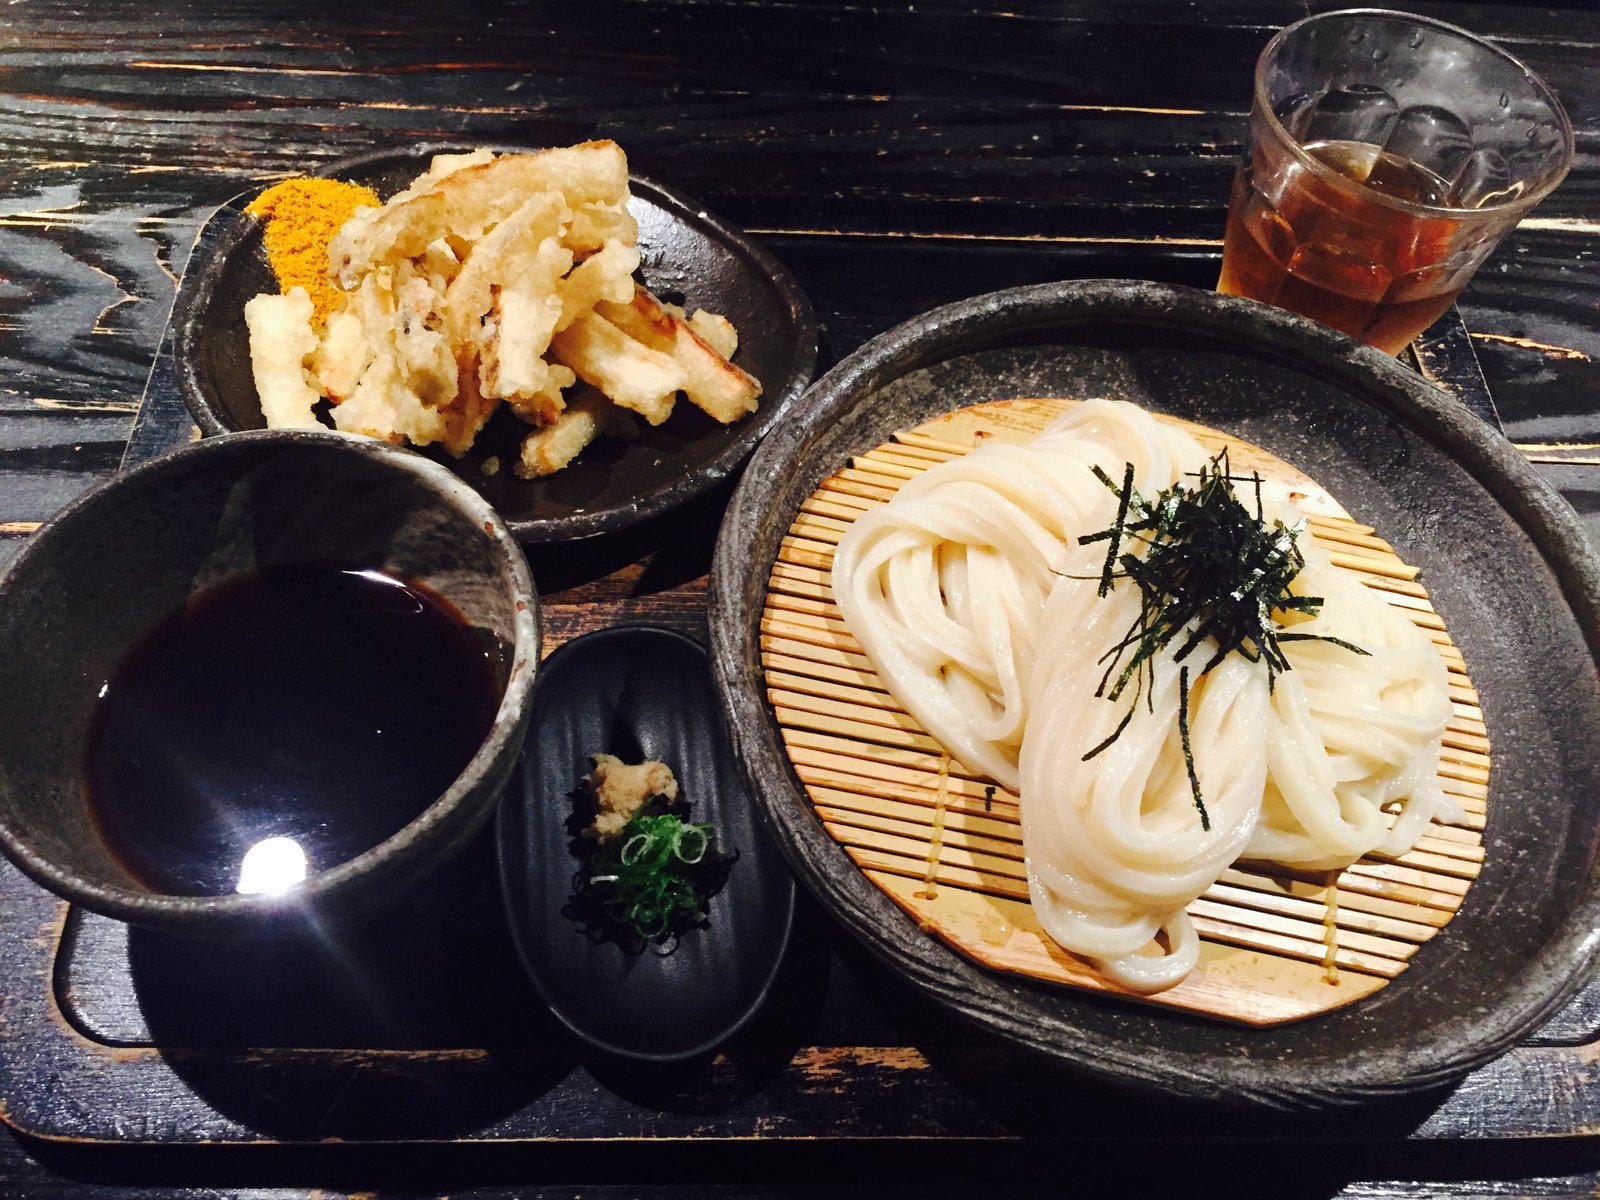 京都で1番 平安神宮近くの 山元麺蔵 は他のうどんが食えなくなるほど美味い 行列回避方法有り Playlife プレイライフ